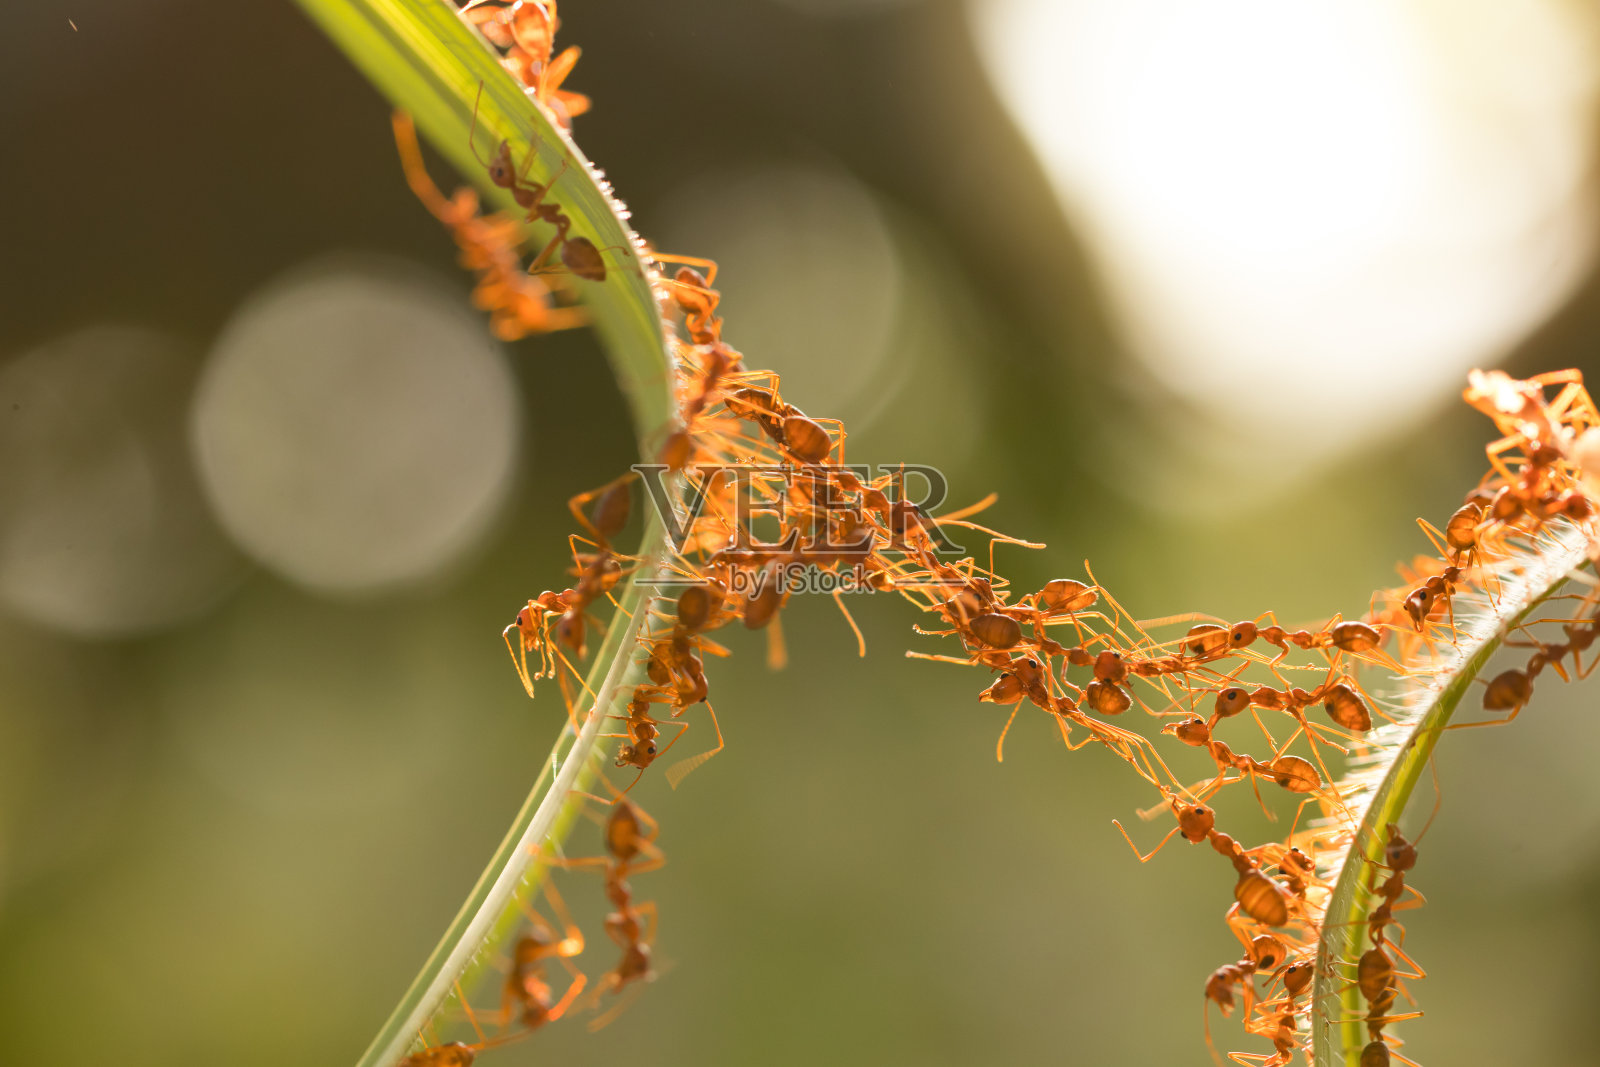 蚂蚁保存幼虫 库存图片. 图片 包括有 空白, 宏指令, 想法, 茴香, 特写镜头, 颜色, 概念, 昆虫 - 31427085